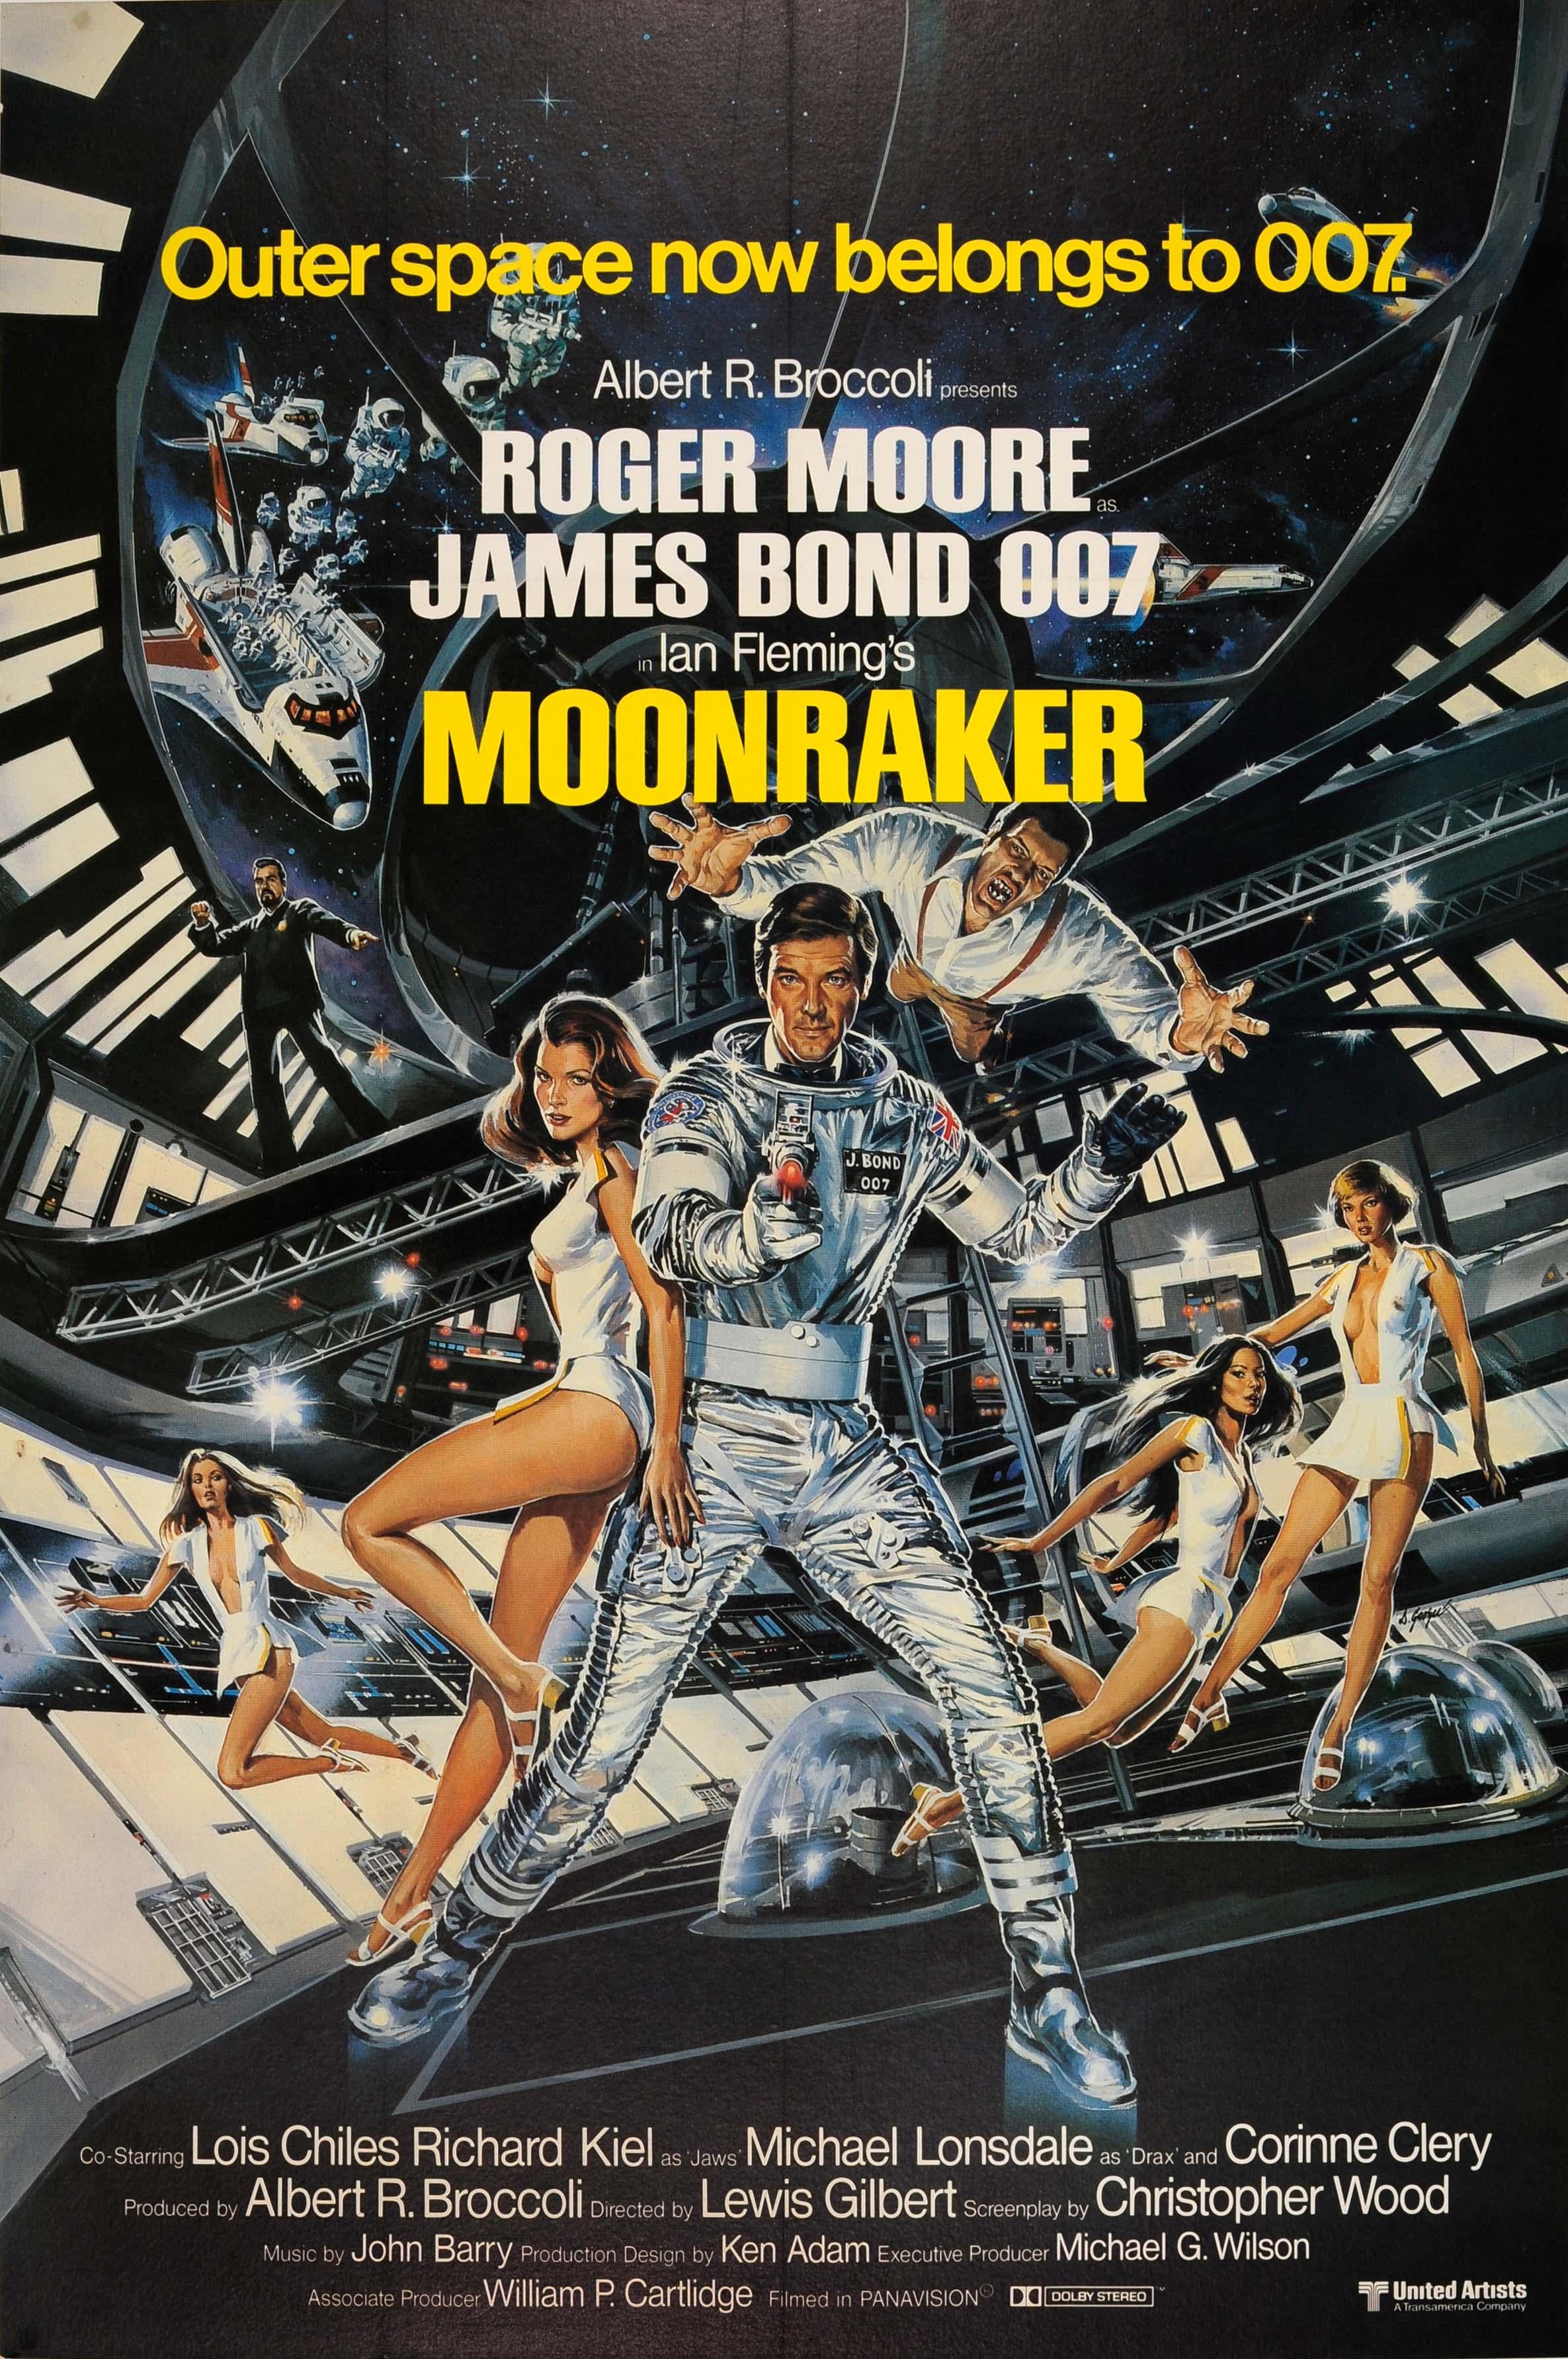 Print Dan Goozee - Affiche vintage originale du film James Bond « Moonraker » (Luneraker), L'espace extérieur appartient maintenant à 007